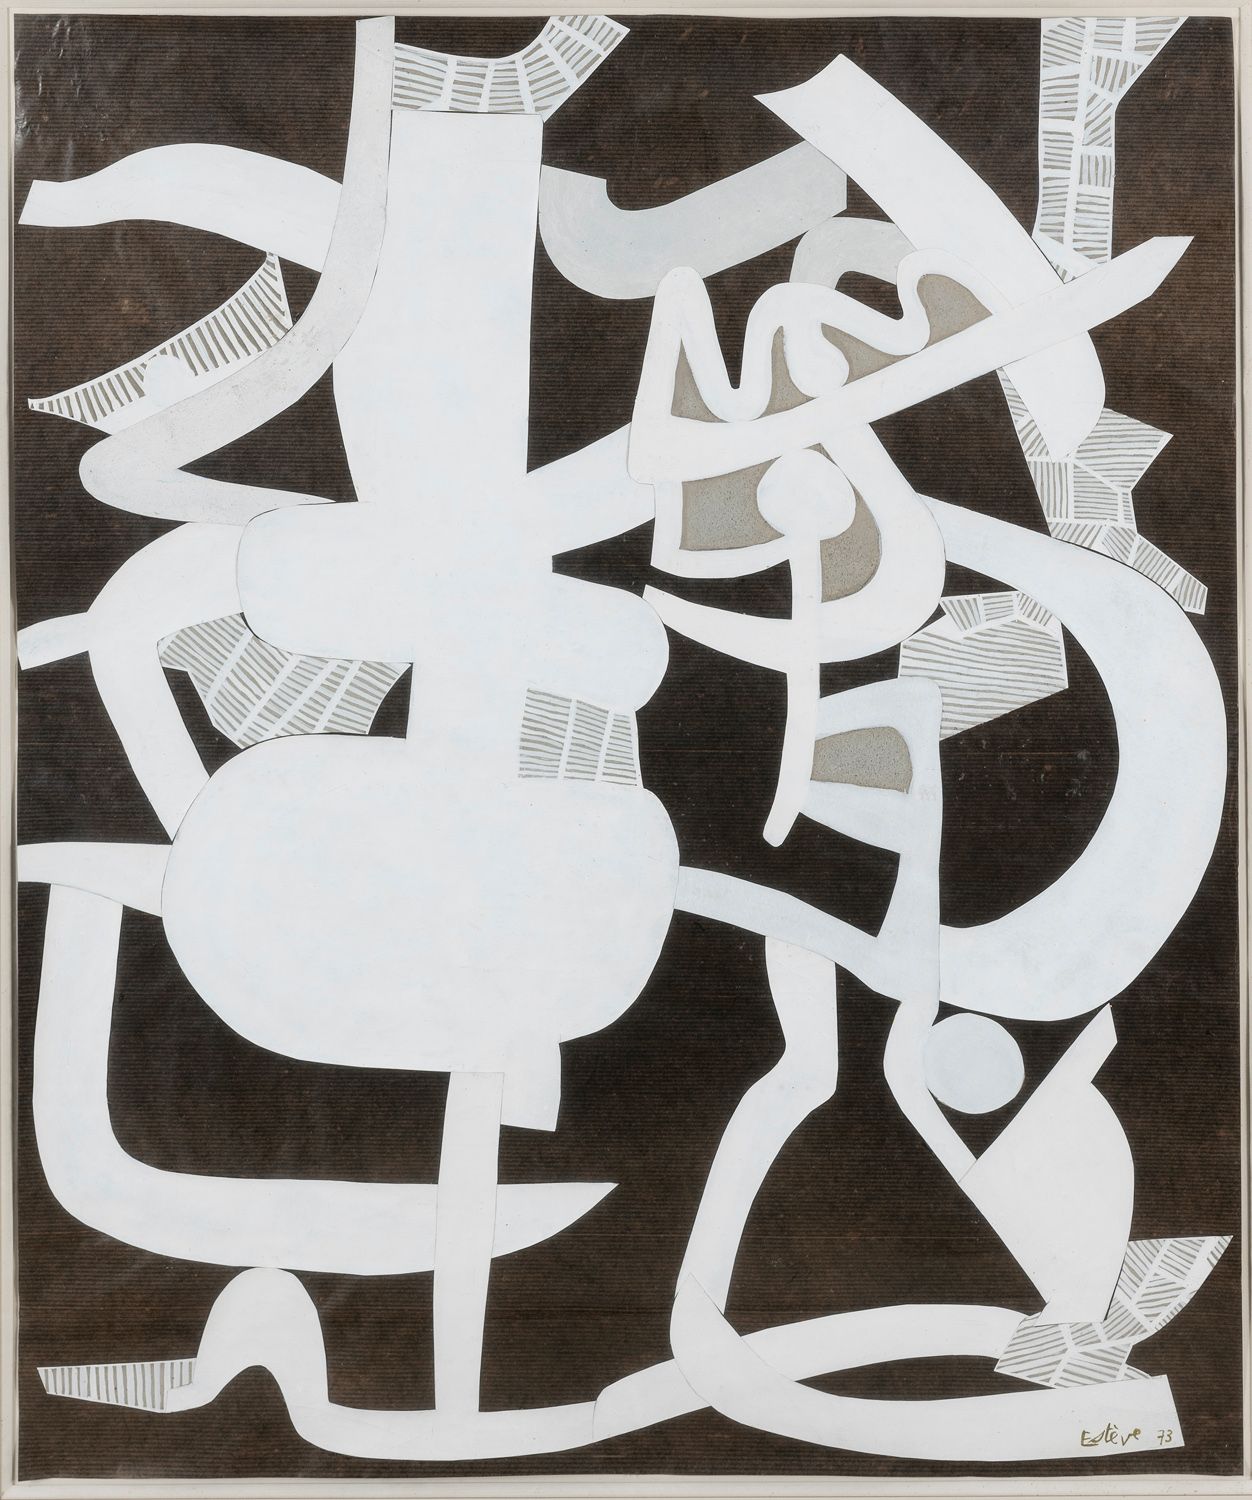 Null Maurice ESTEVE (1904-2001)

Composición, 1973

Collage de papeles pintados &hellip;